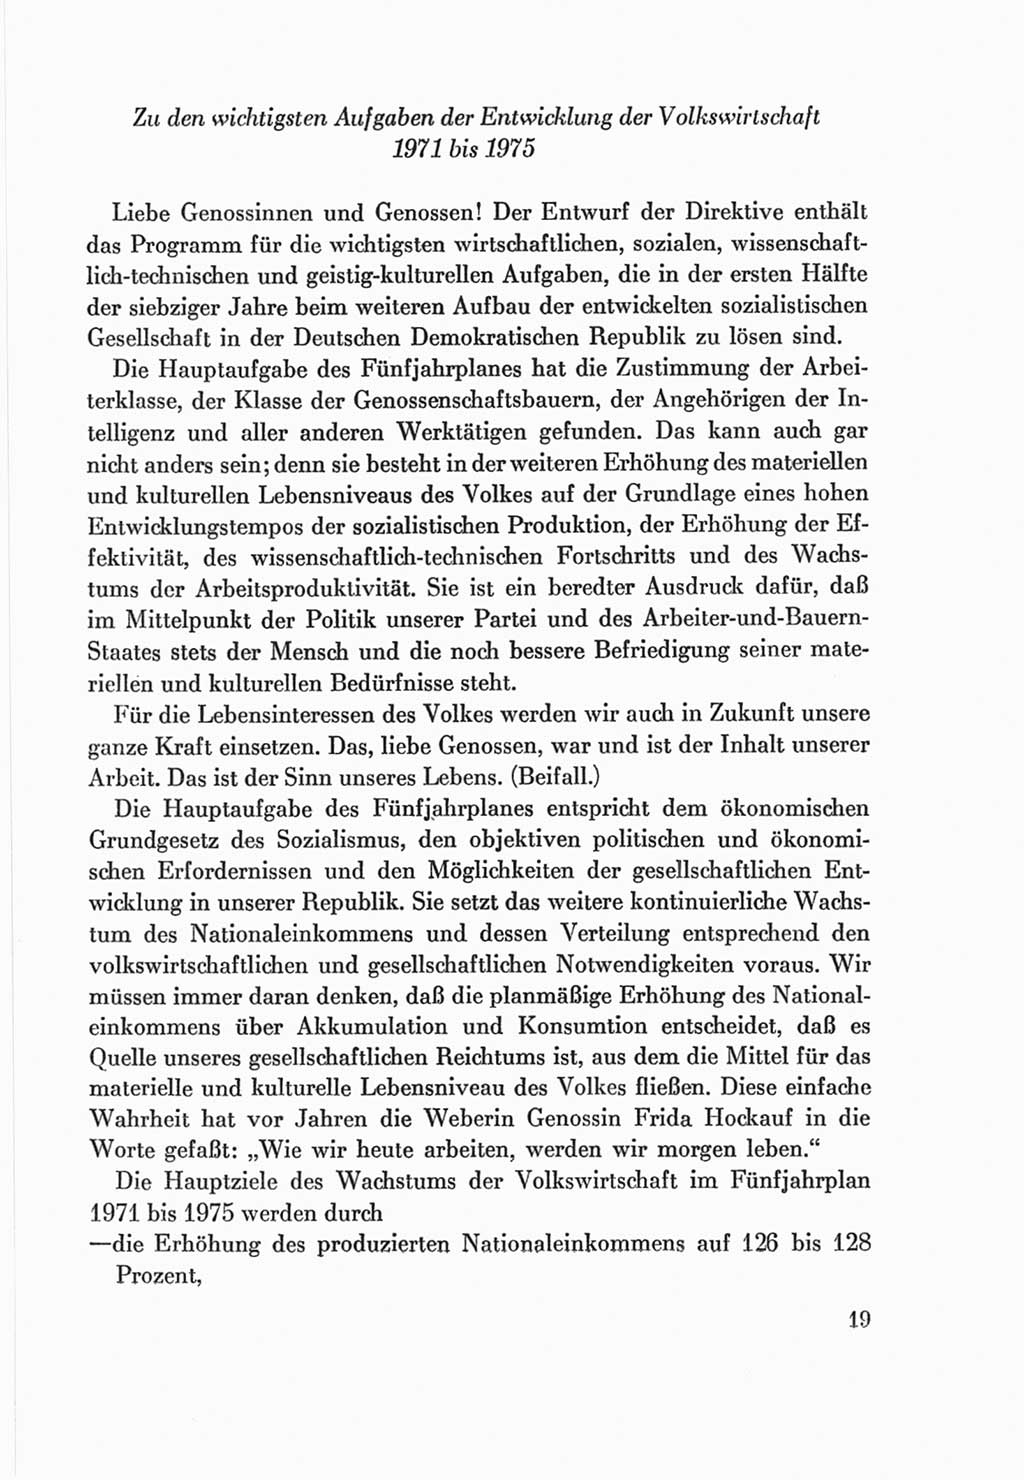 Protokoll der Verhandlungen des Ⅷ. Parteitages der Sozialistischen Einheitspartei Deutschlands (SED) [Deutsche Demokratische Republik (DDR)] 1971, Band 2, Seite 19 (Prot. Verh. Ⅷ. PT SED DDR 1971, Bd. 2, S. 19)